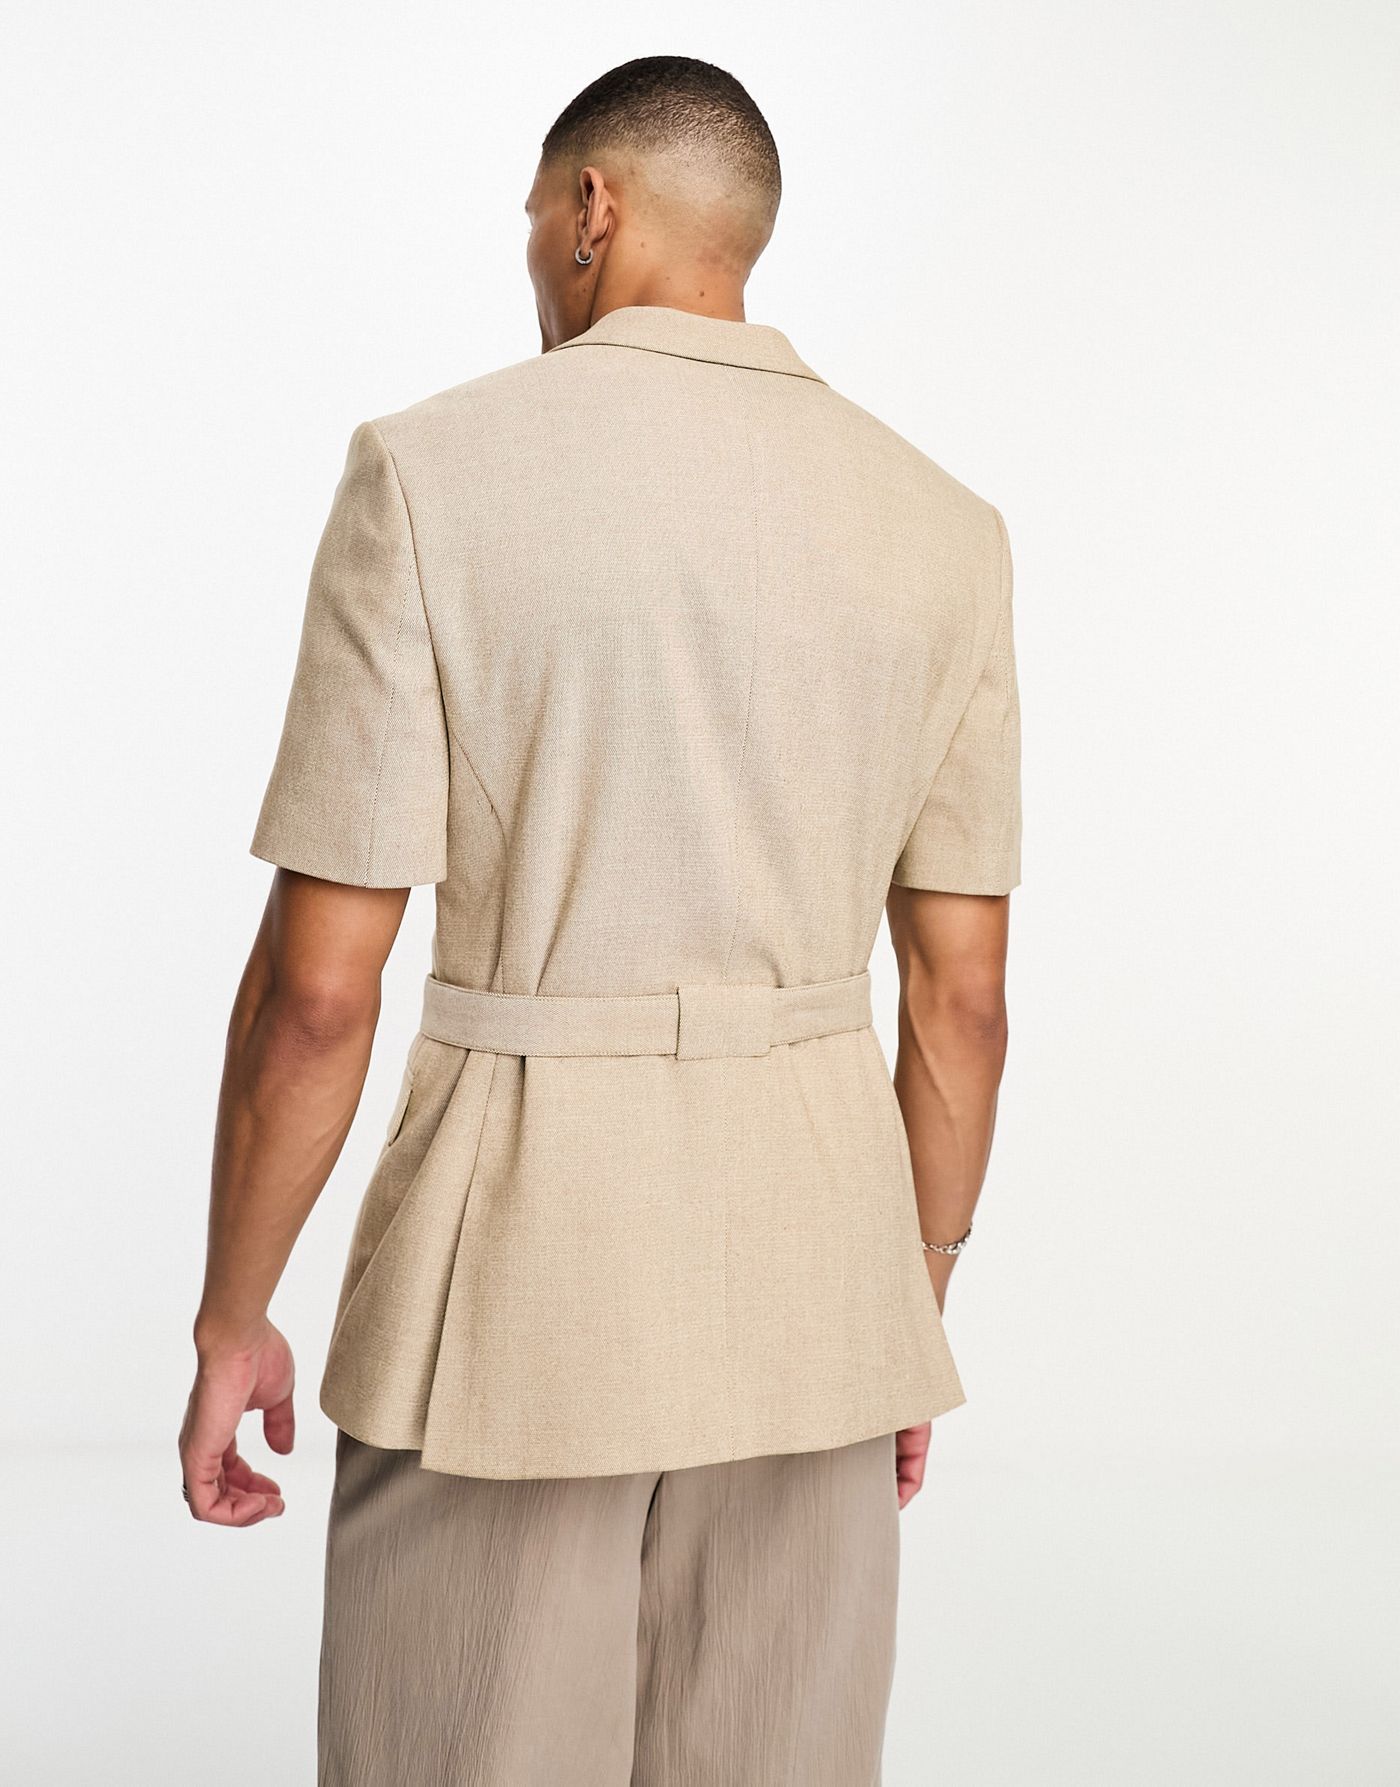 ASOS DESIGN short sleeved belted suit jacket in light brown